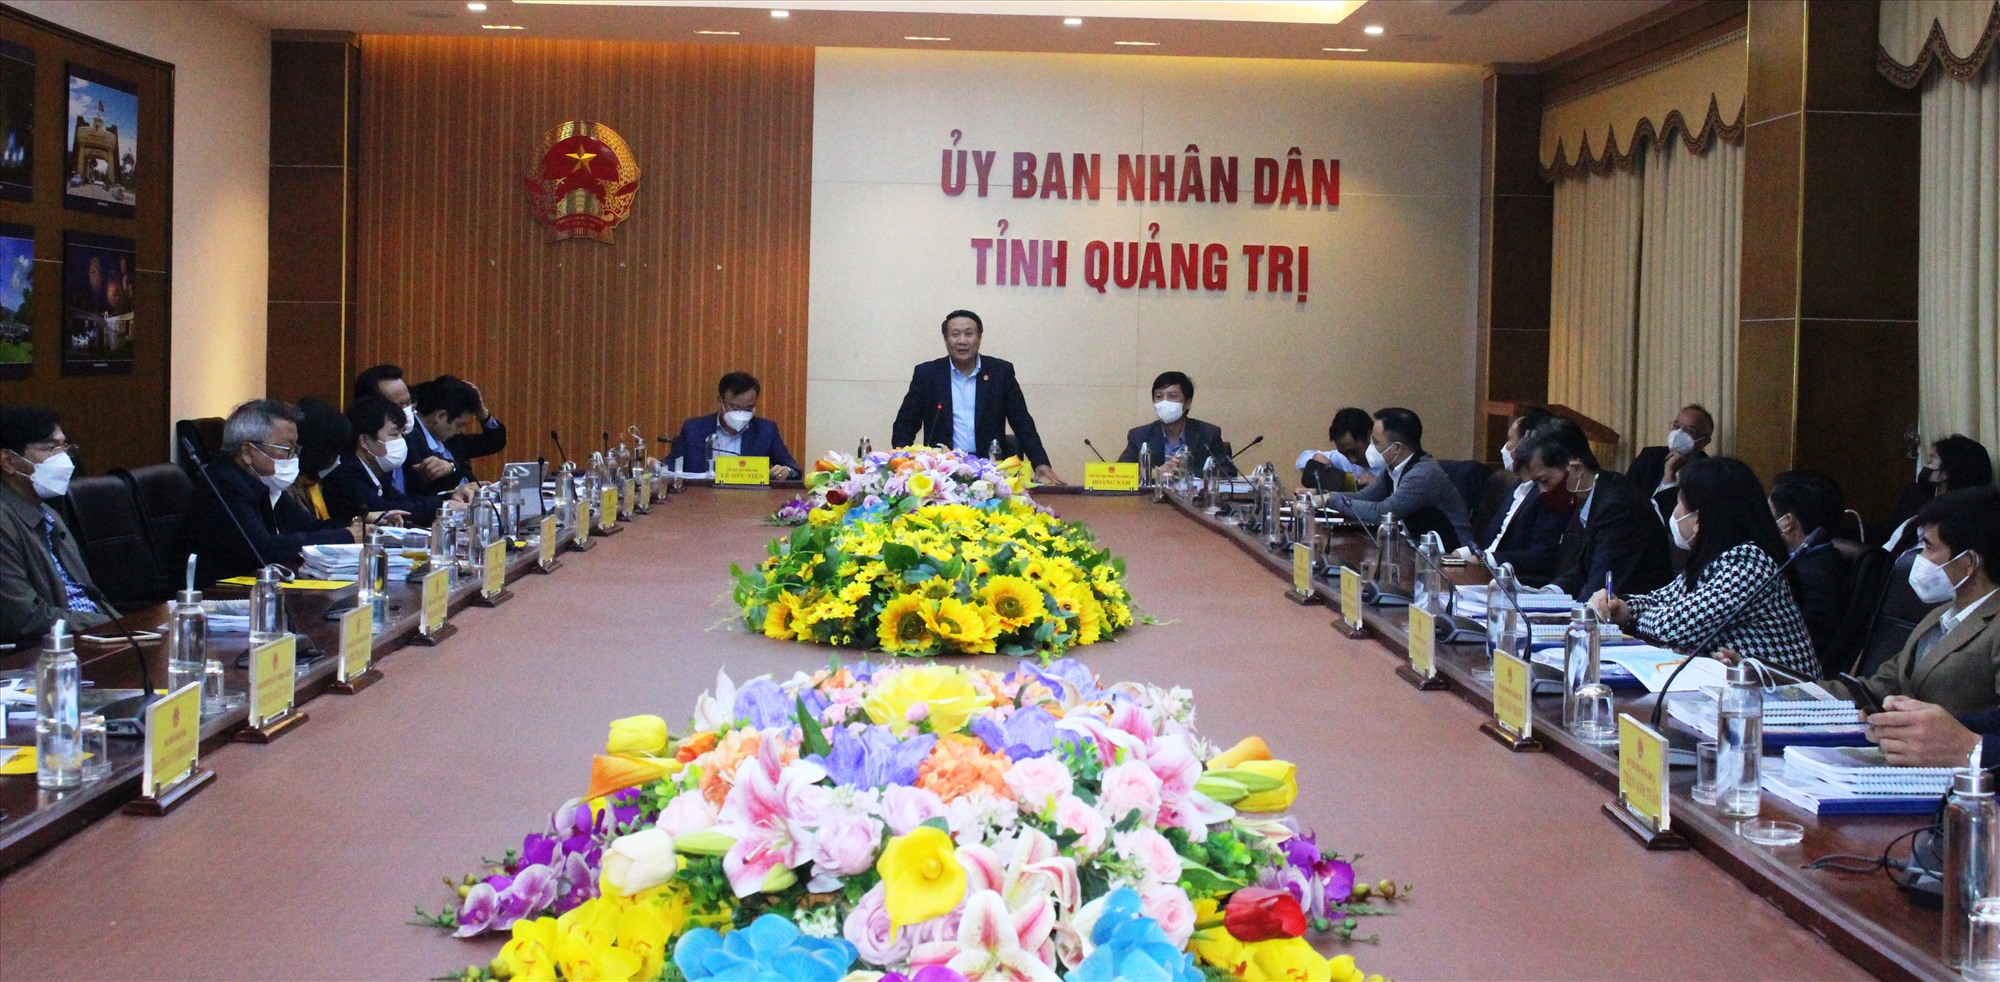 Phó Chủ tịch Thường trực UBND tỉnh Hà Sỹ Đồng  phát biểu tại biểu làm việc - Ảnh: T.T